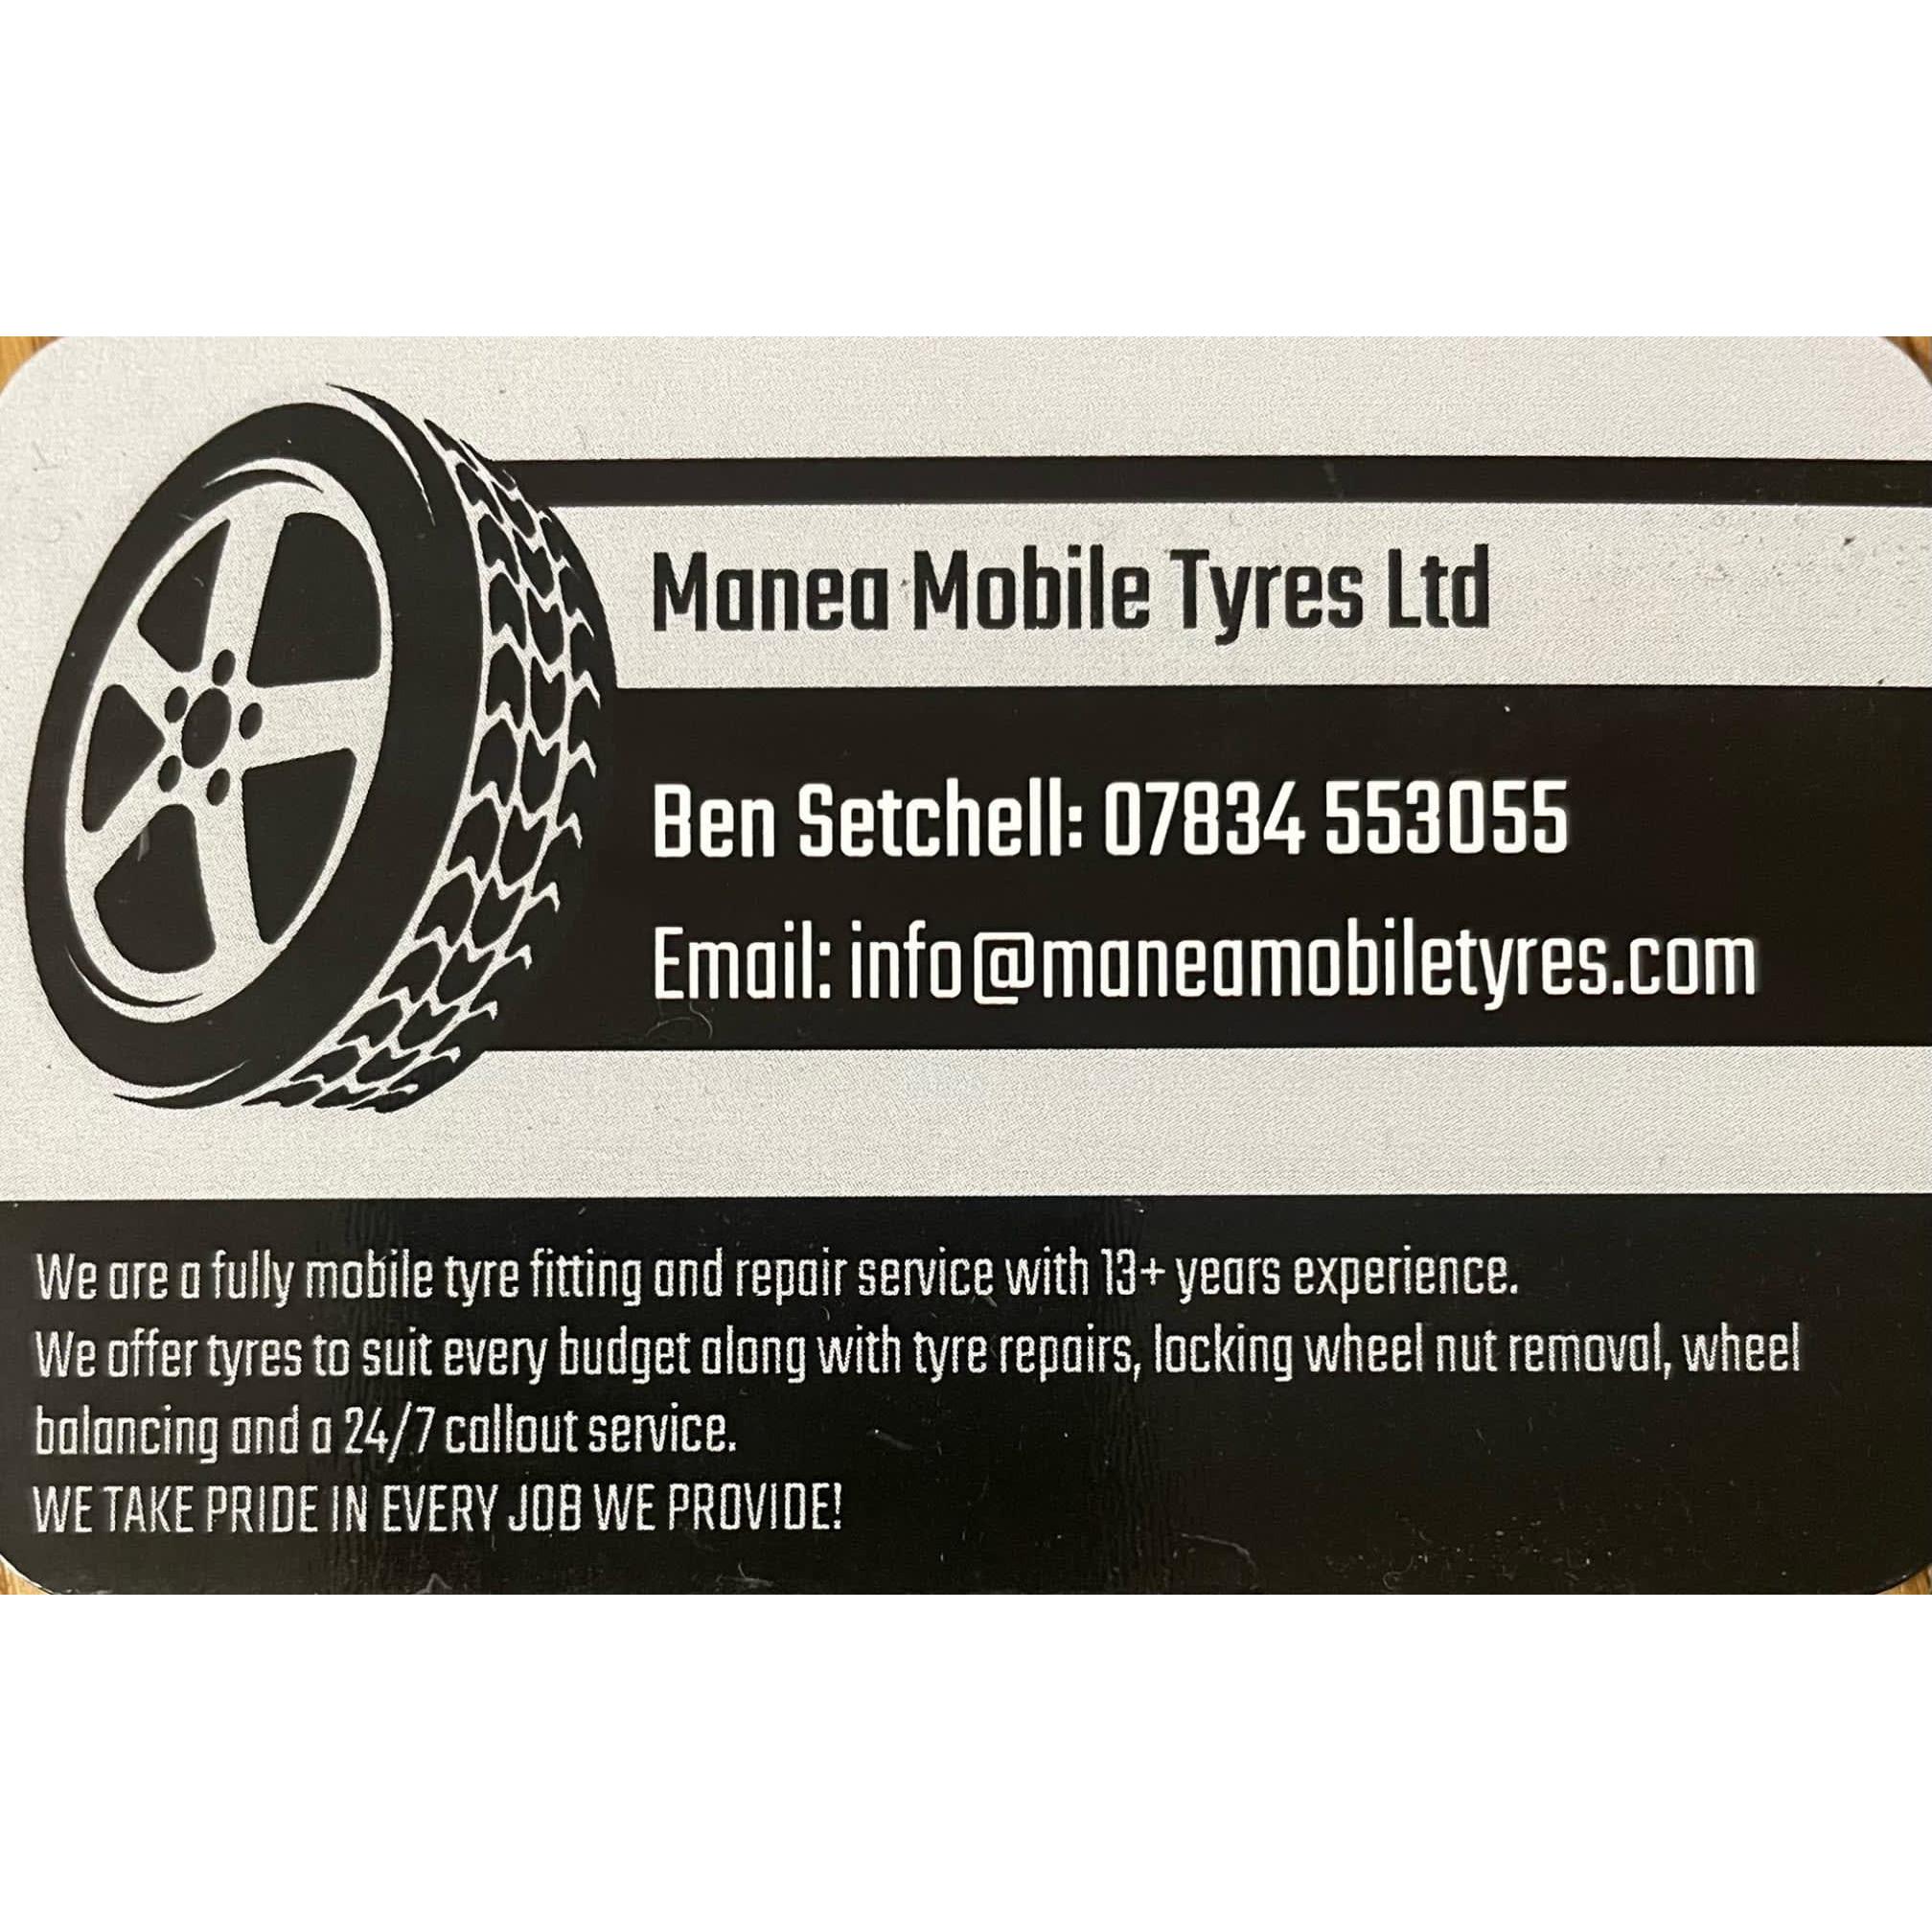 Manea Mobile Tyres Ltd - Chatteris, Cambridgeshire - 07834 553055 | ShowMeLocal.com